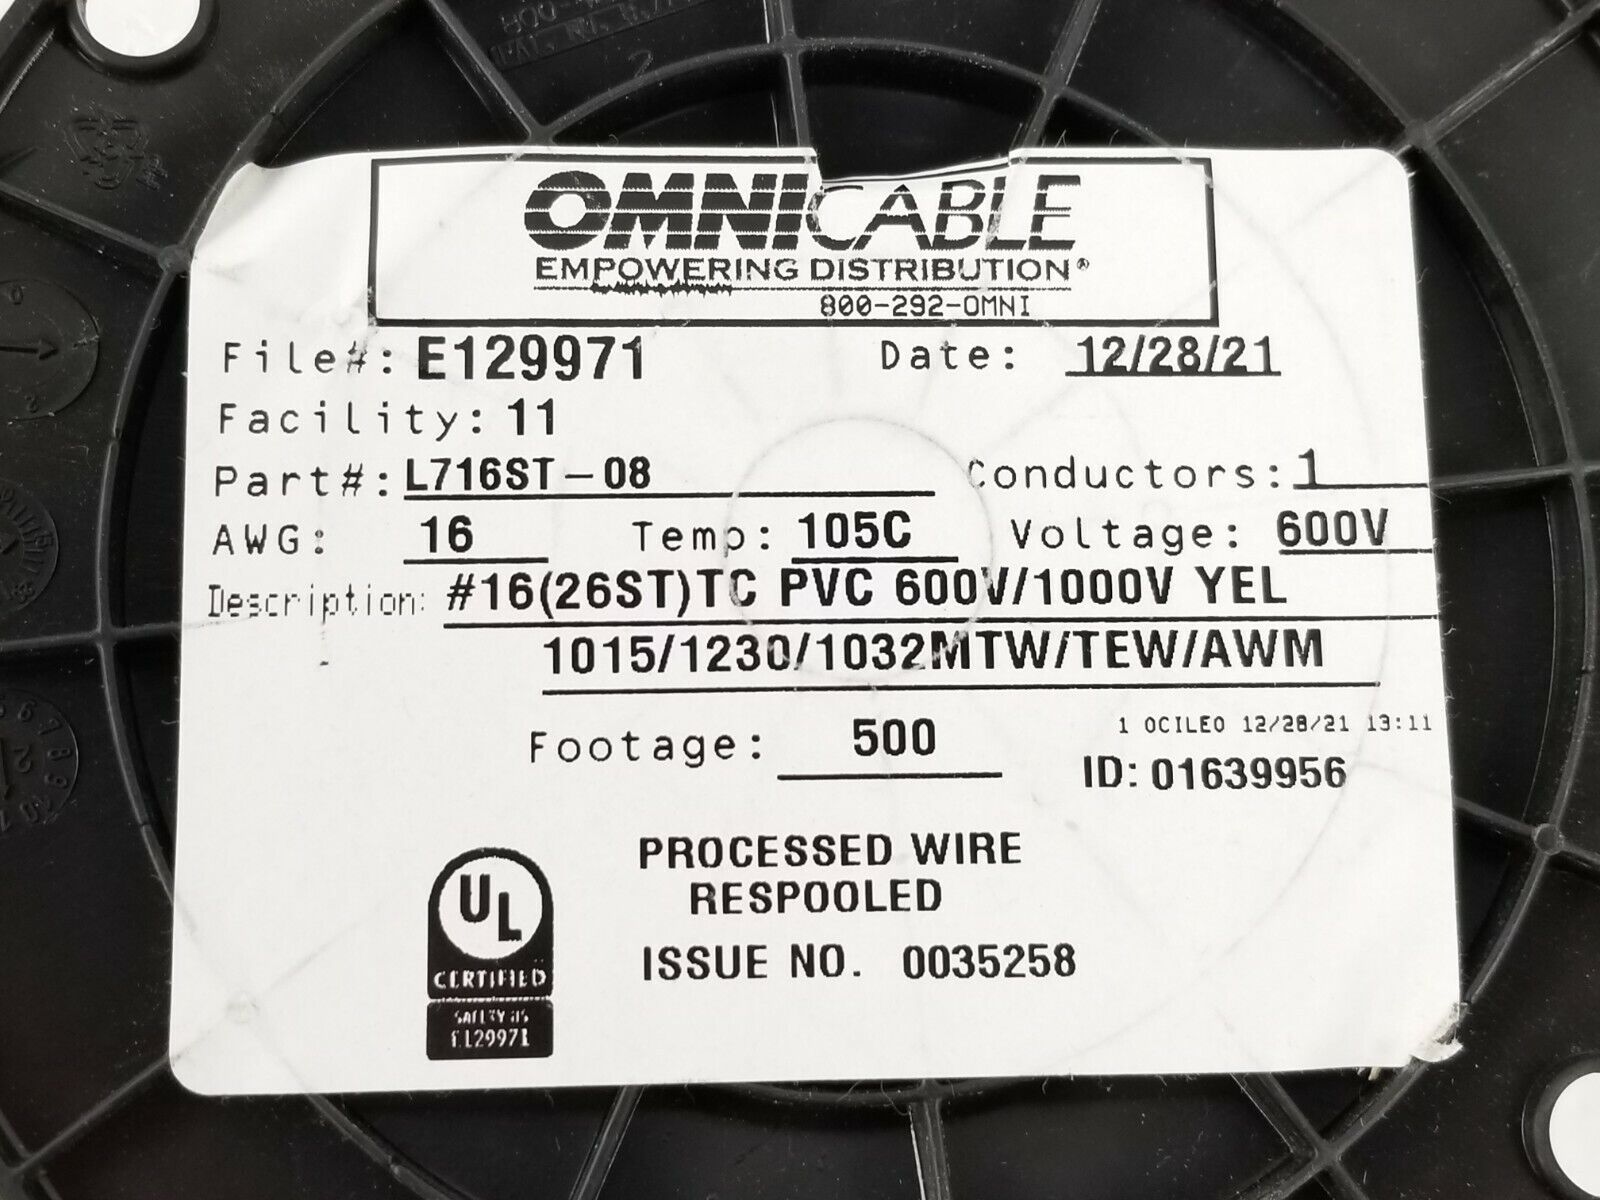 Omni Cable L716ST-08  16(26ST)TC PVC 600V/1000V Yellow 1015 / 1230 / 1032  500FT